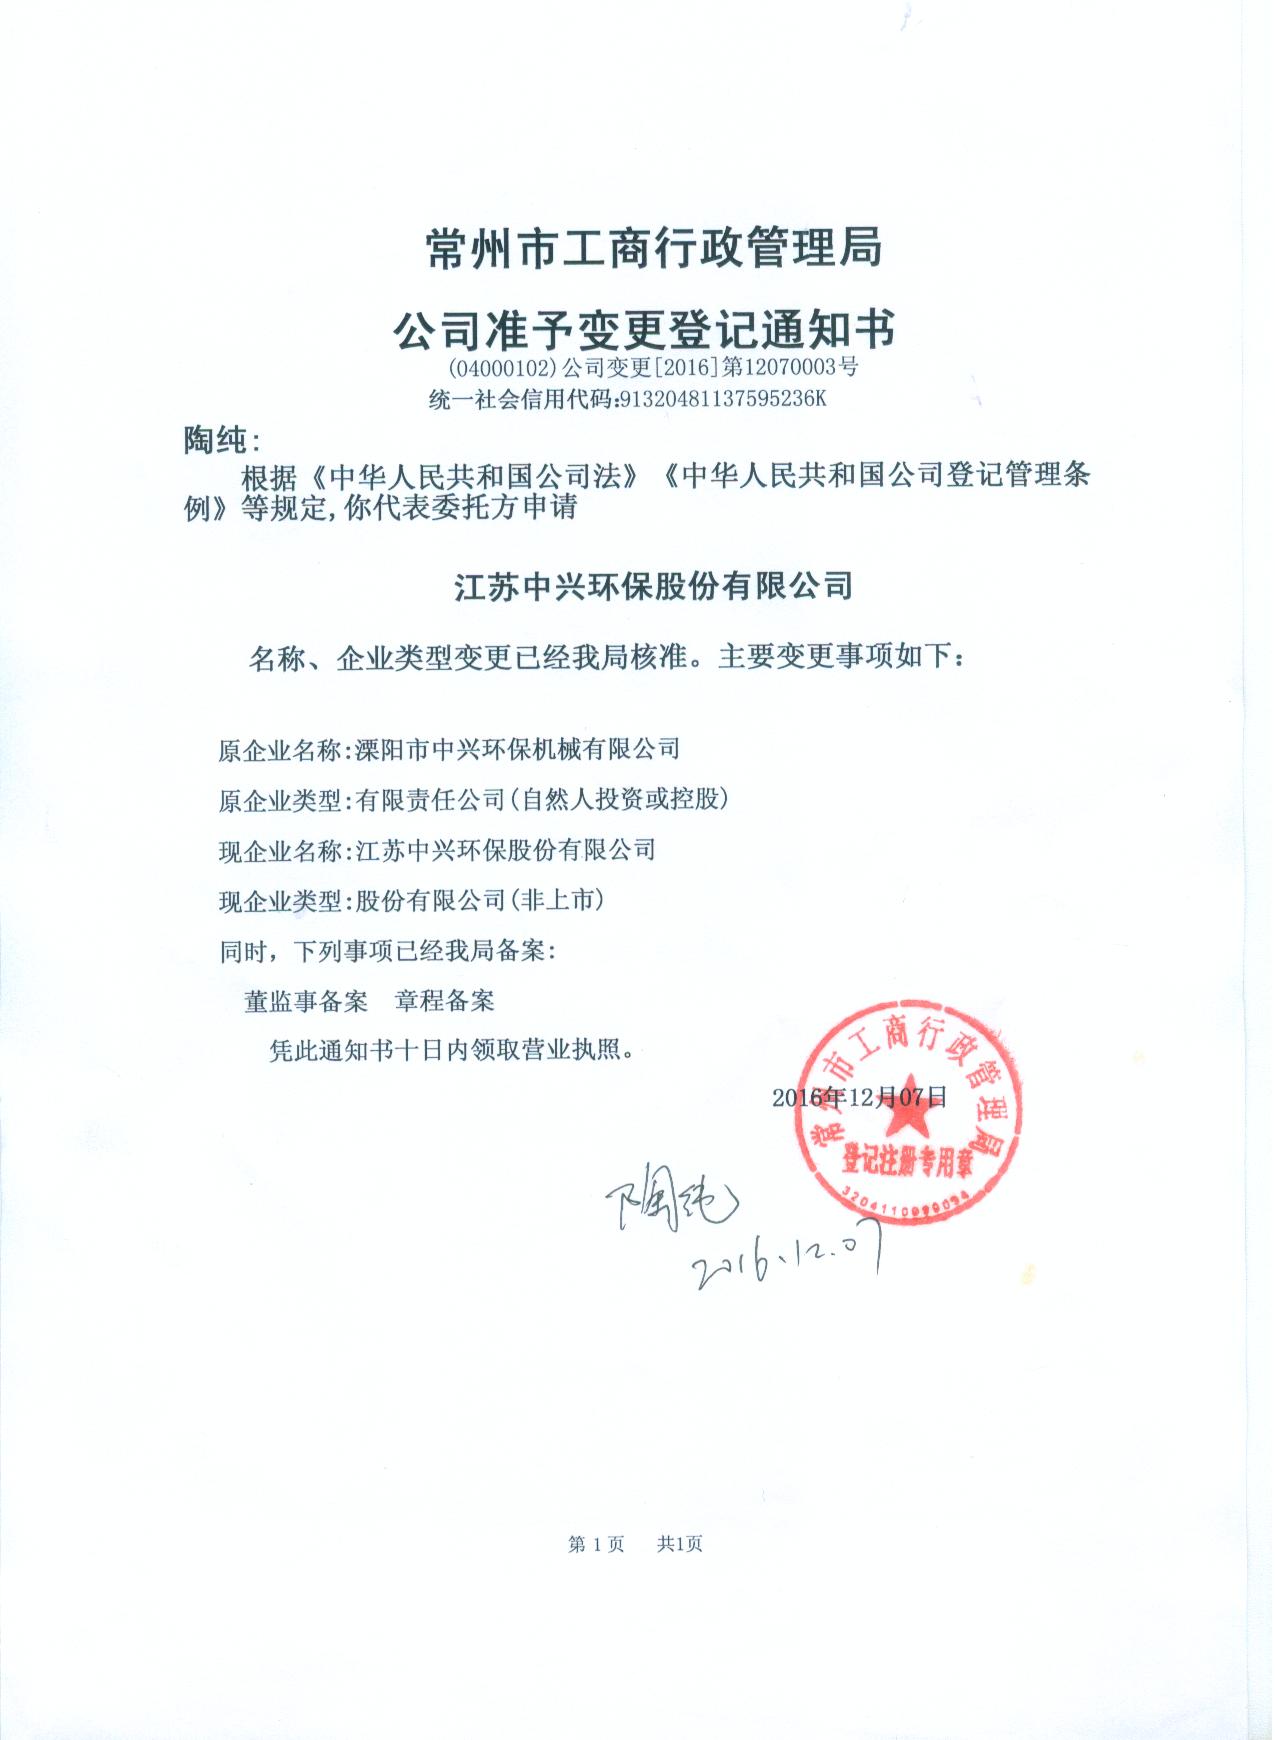 2016年12月07日公司股改更名为江苏中兴环保股份有